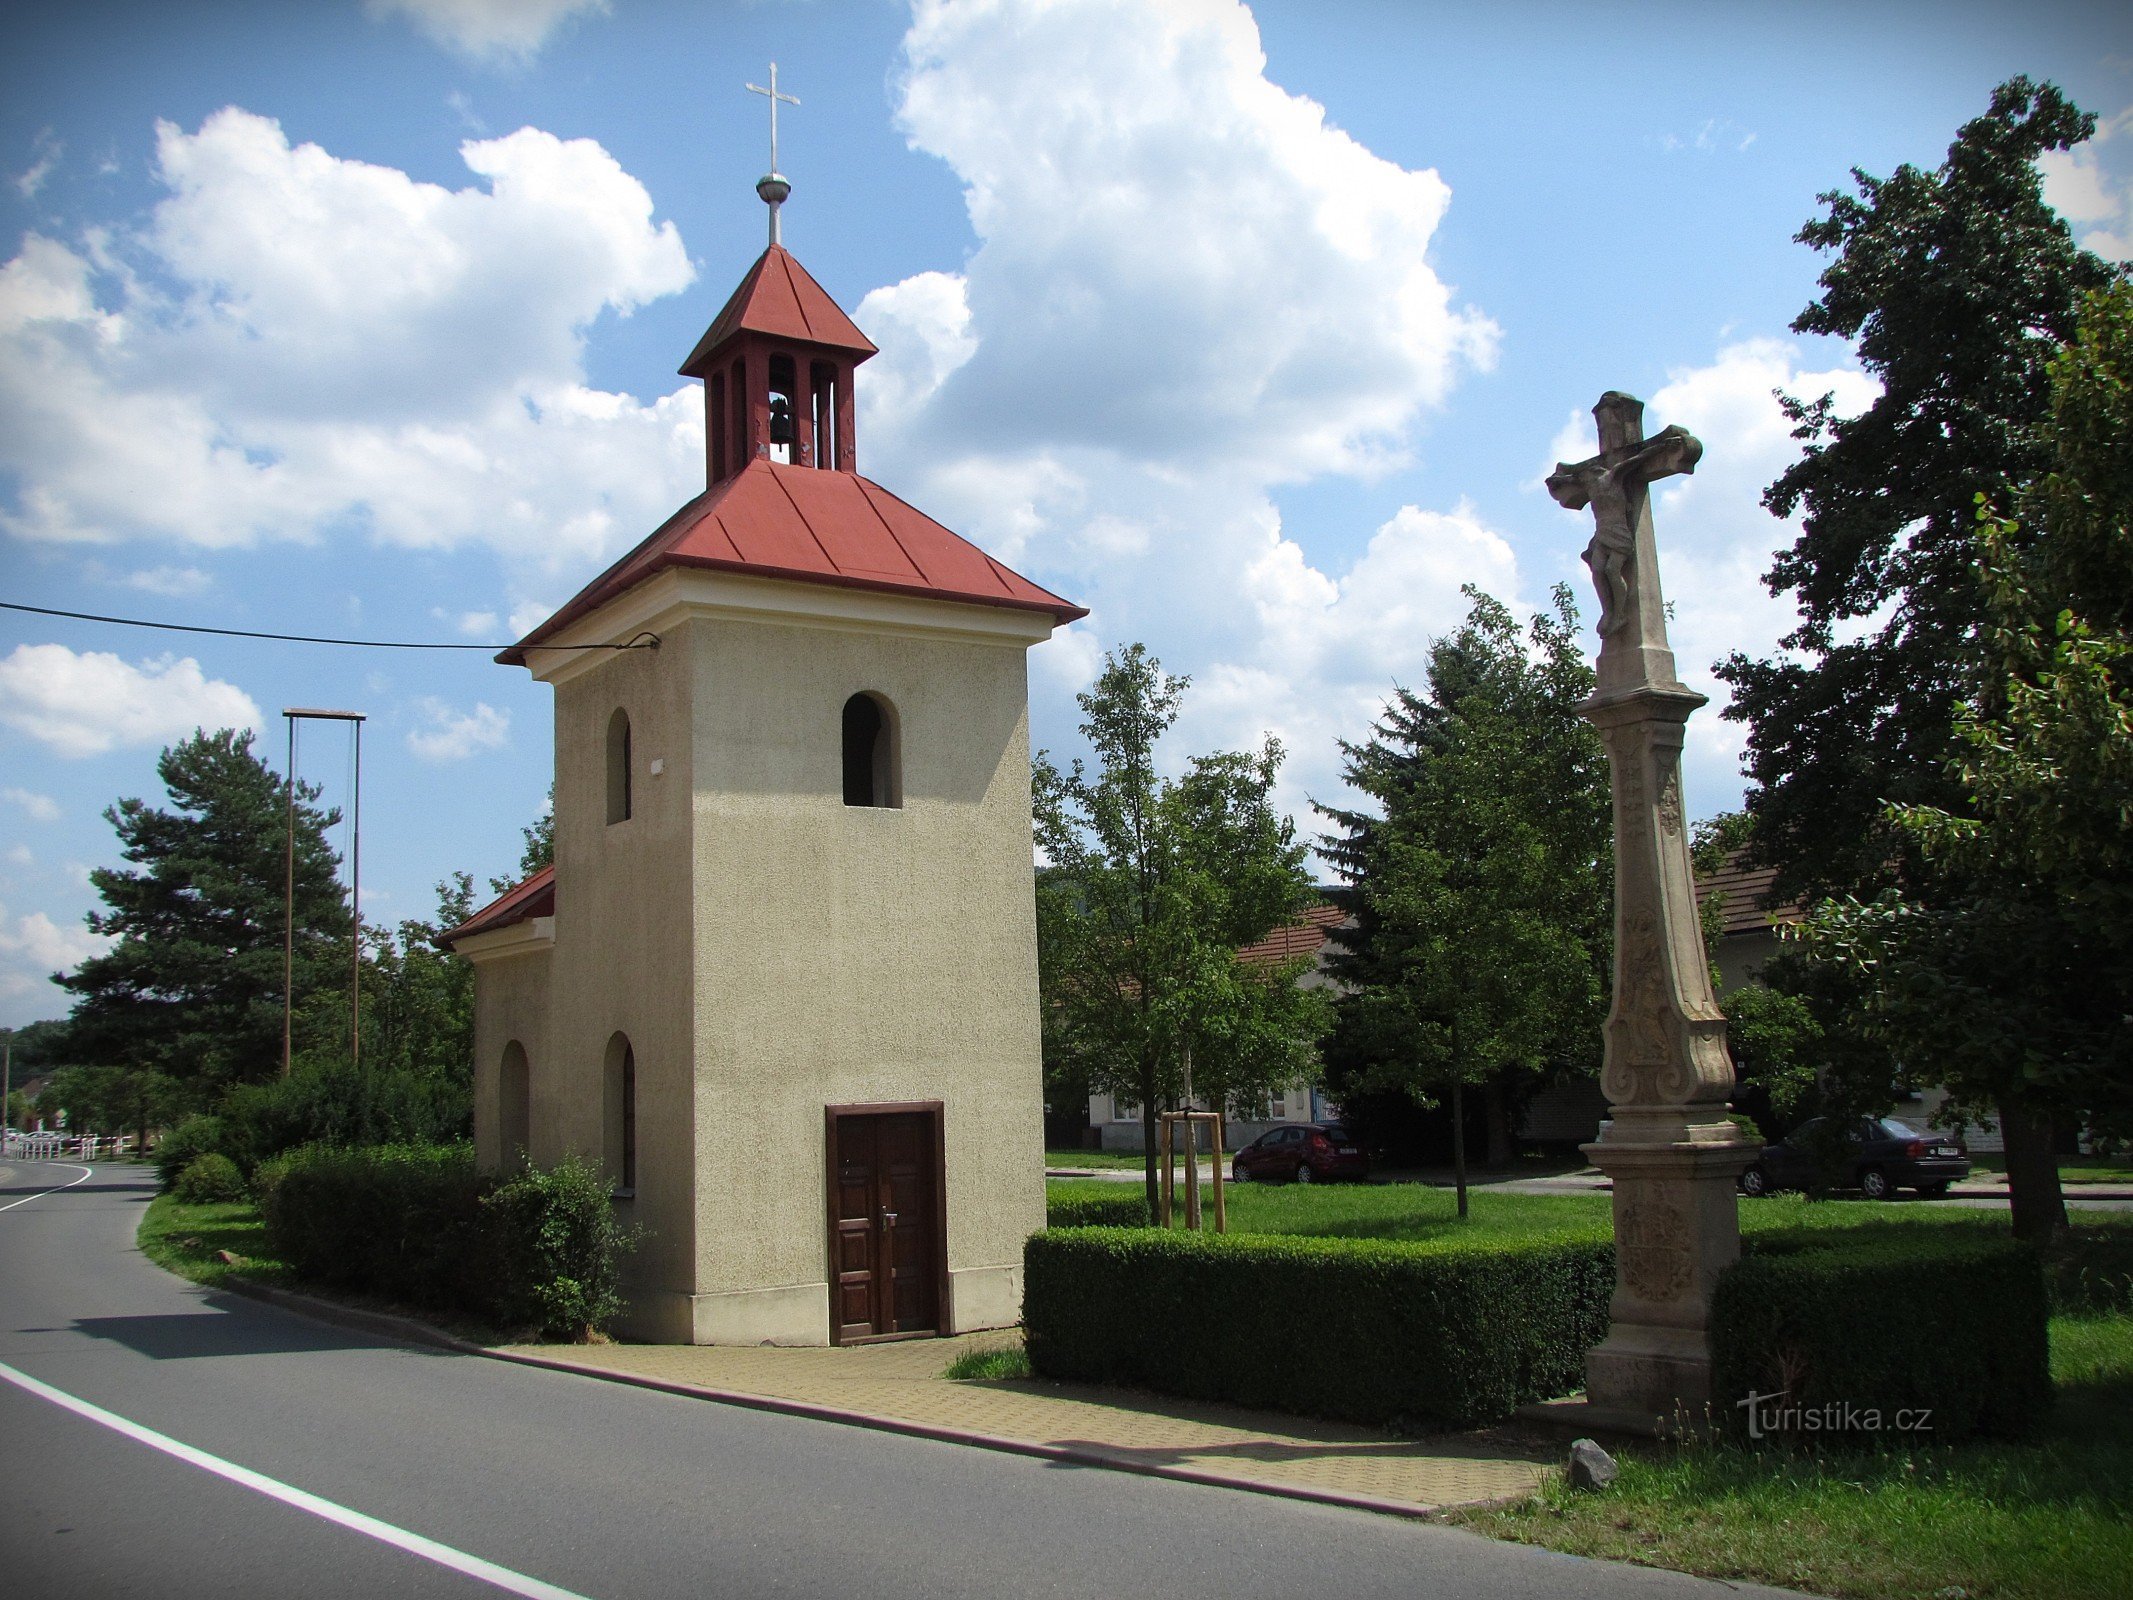 Capilla y cruz en el pueblo de Louky